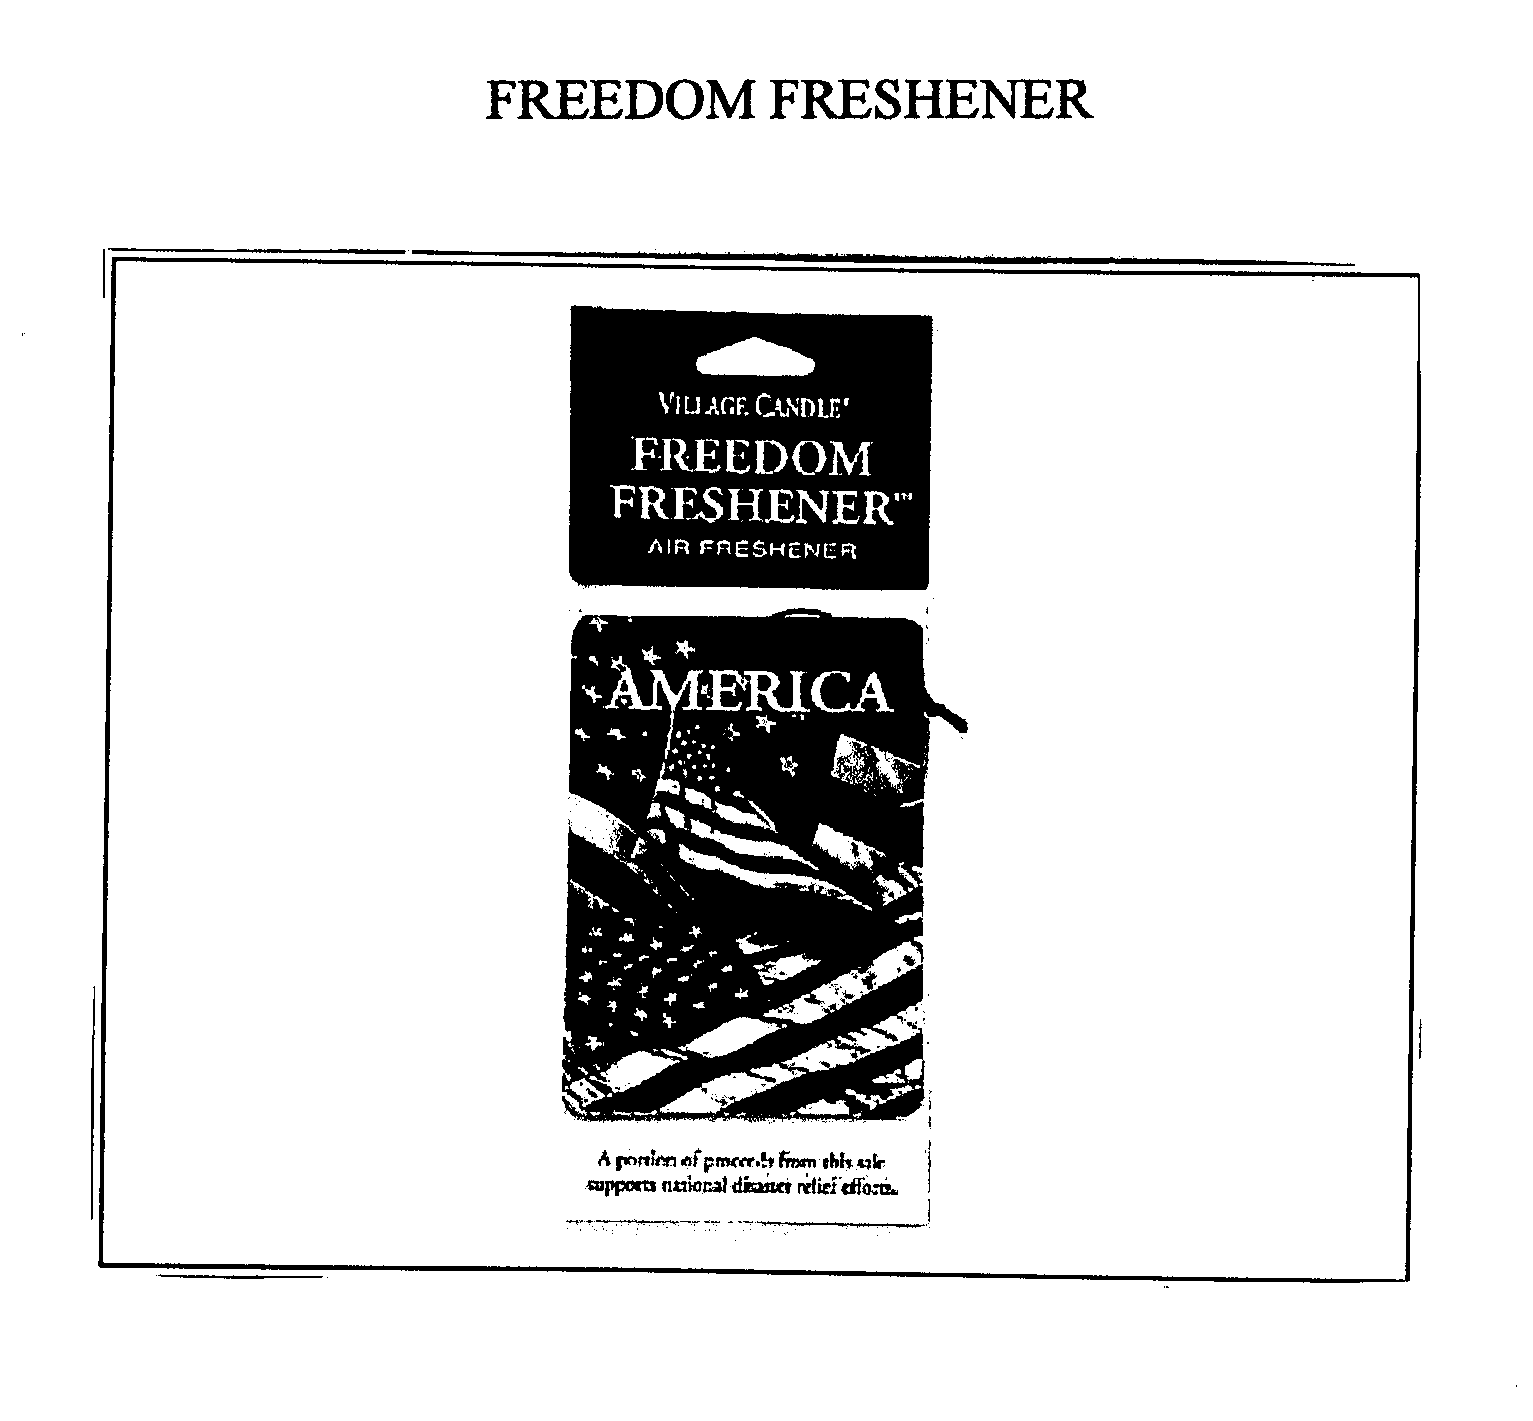  FREEDOM FRESHENER